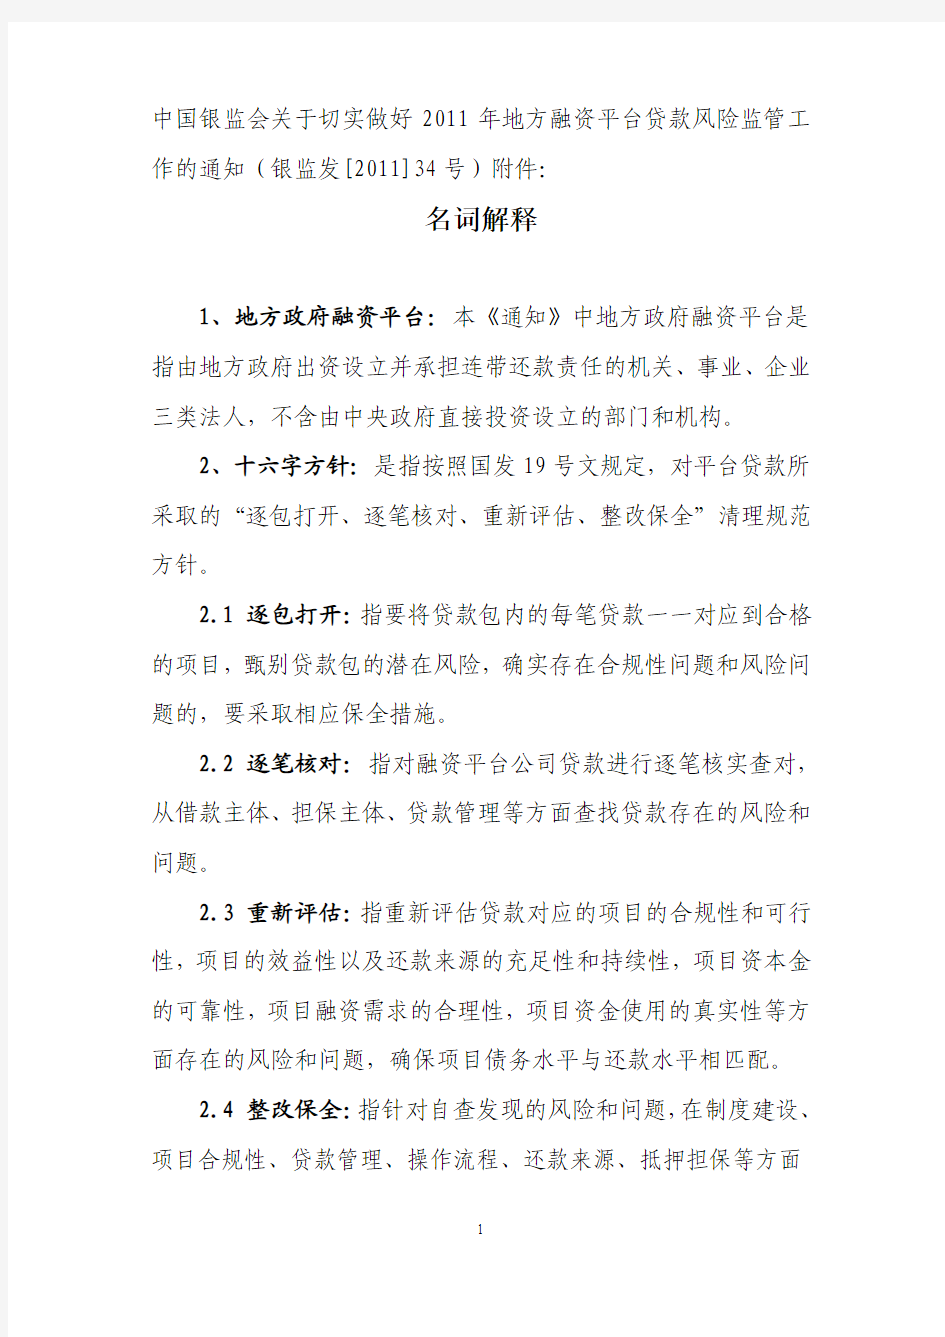 中国银监会关于切实做好2011年地方融资平台贷款风险监管工作的通知(银监发[2011]34号)附件